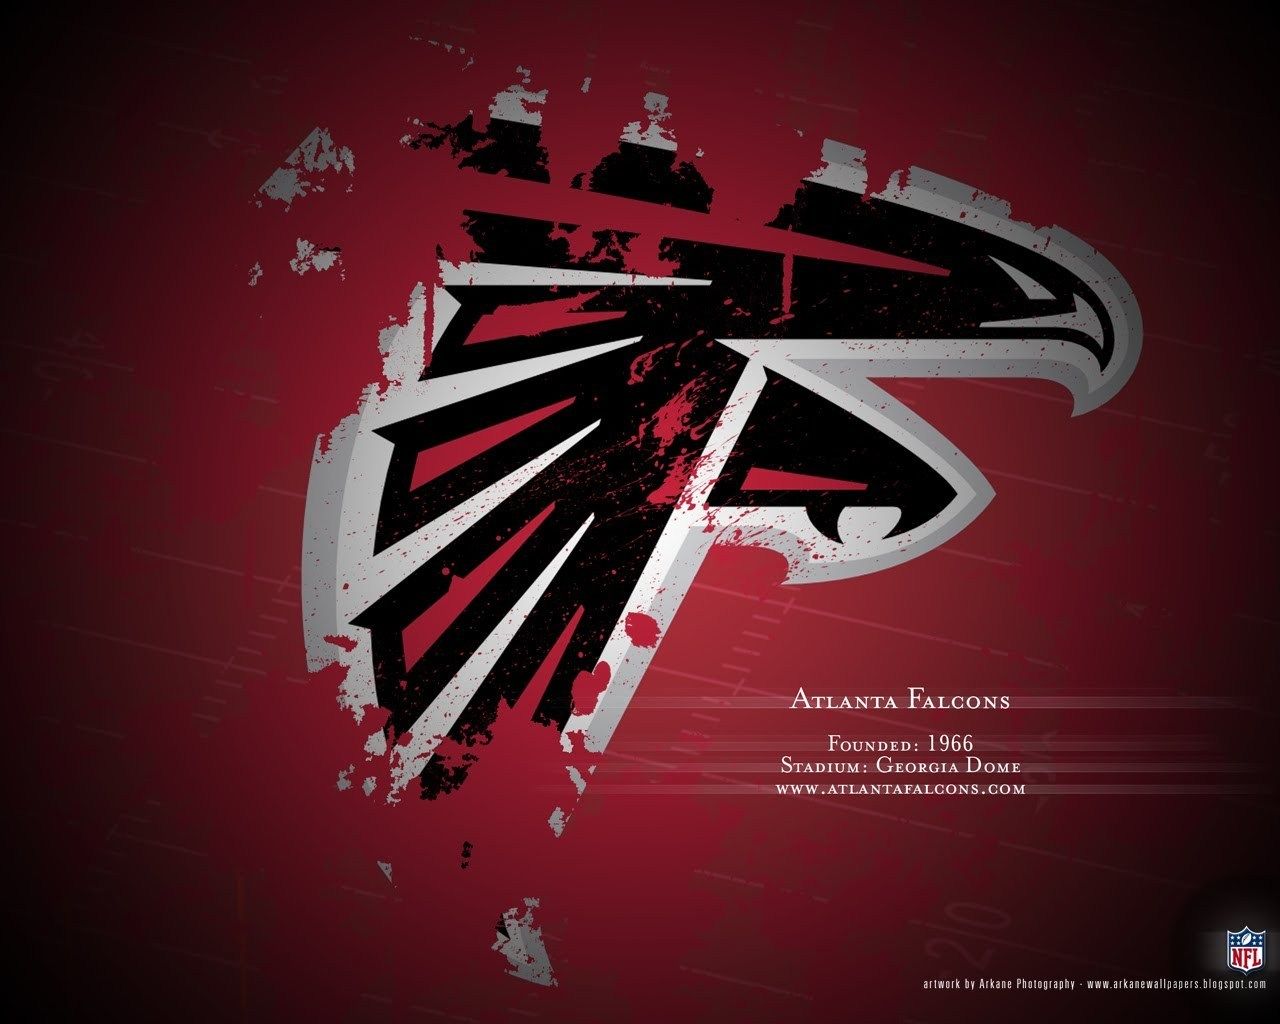 Atlanta Falcons - Atlanta Falcons Wallpaper 9173283 - Fanpop